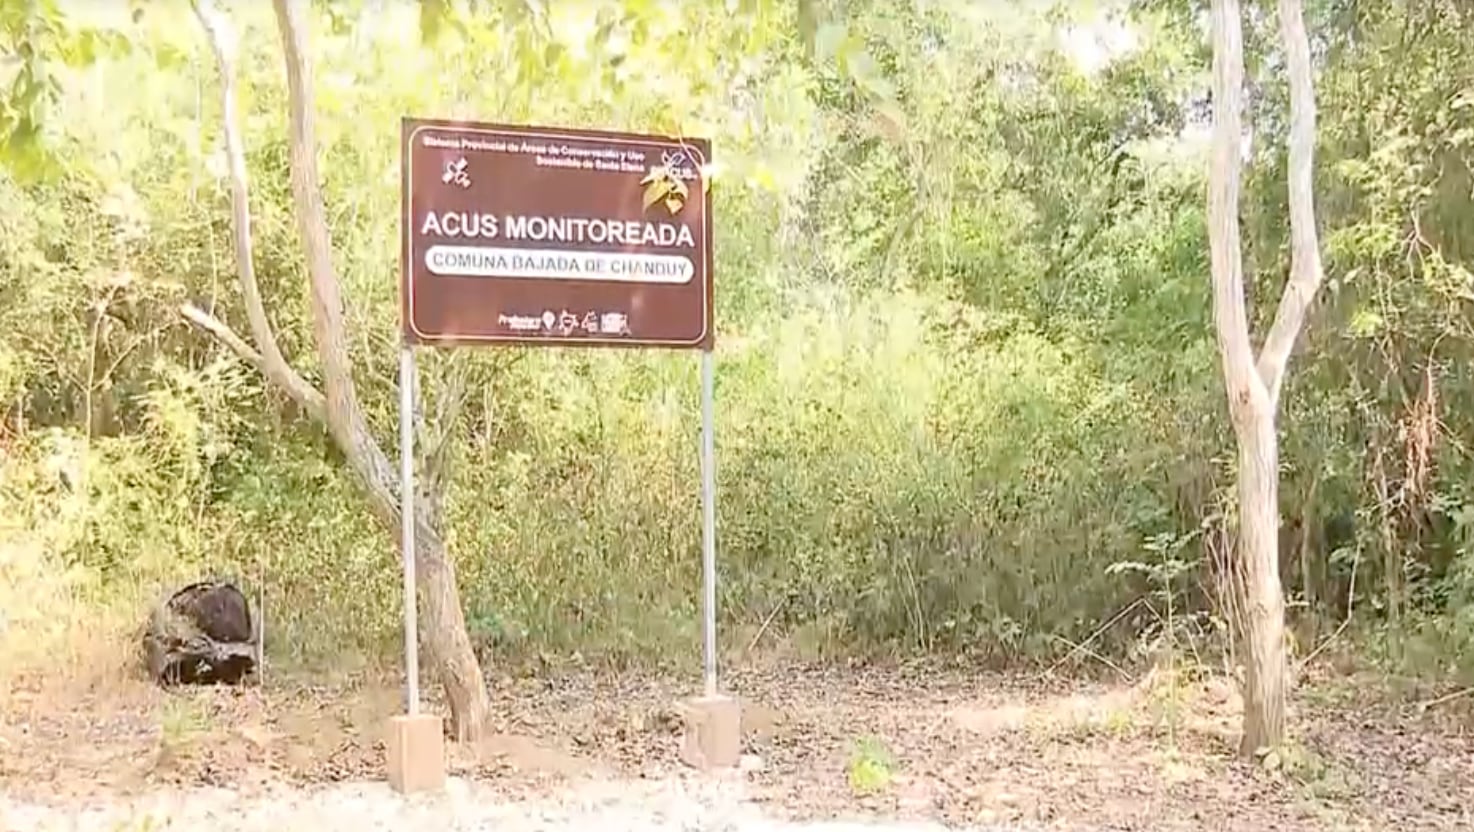 Los letreros de la zona señalan que es un área protegida. (Captura de Pantalla Ecuavisa)